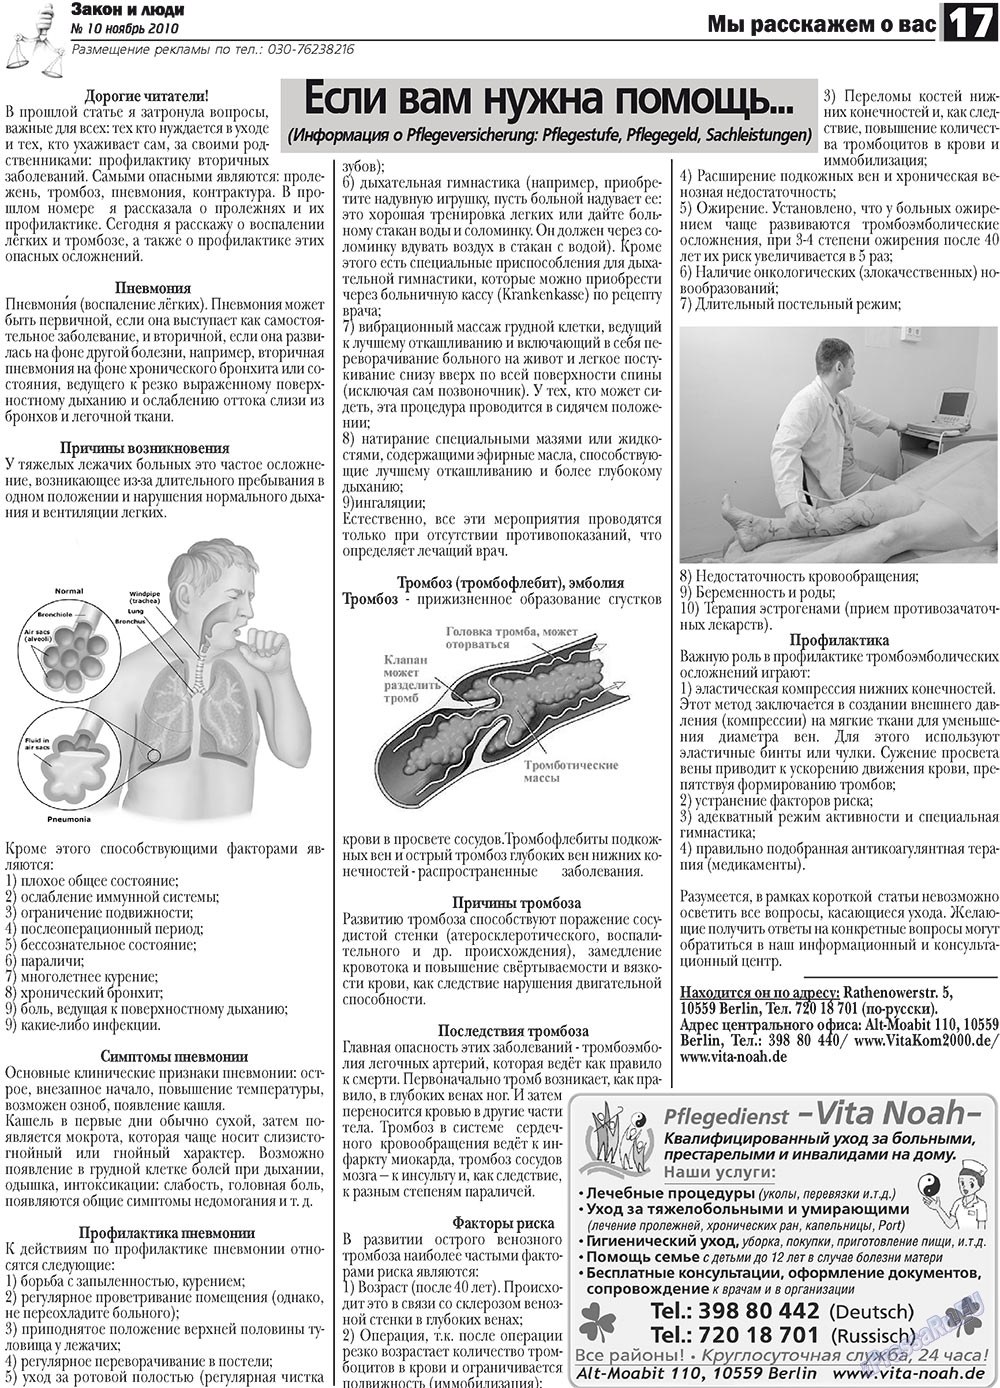 Закон и люди, газета. 2010 №10 стр.17